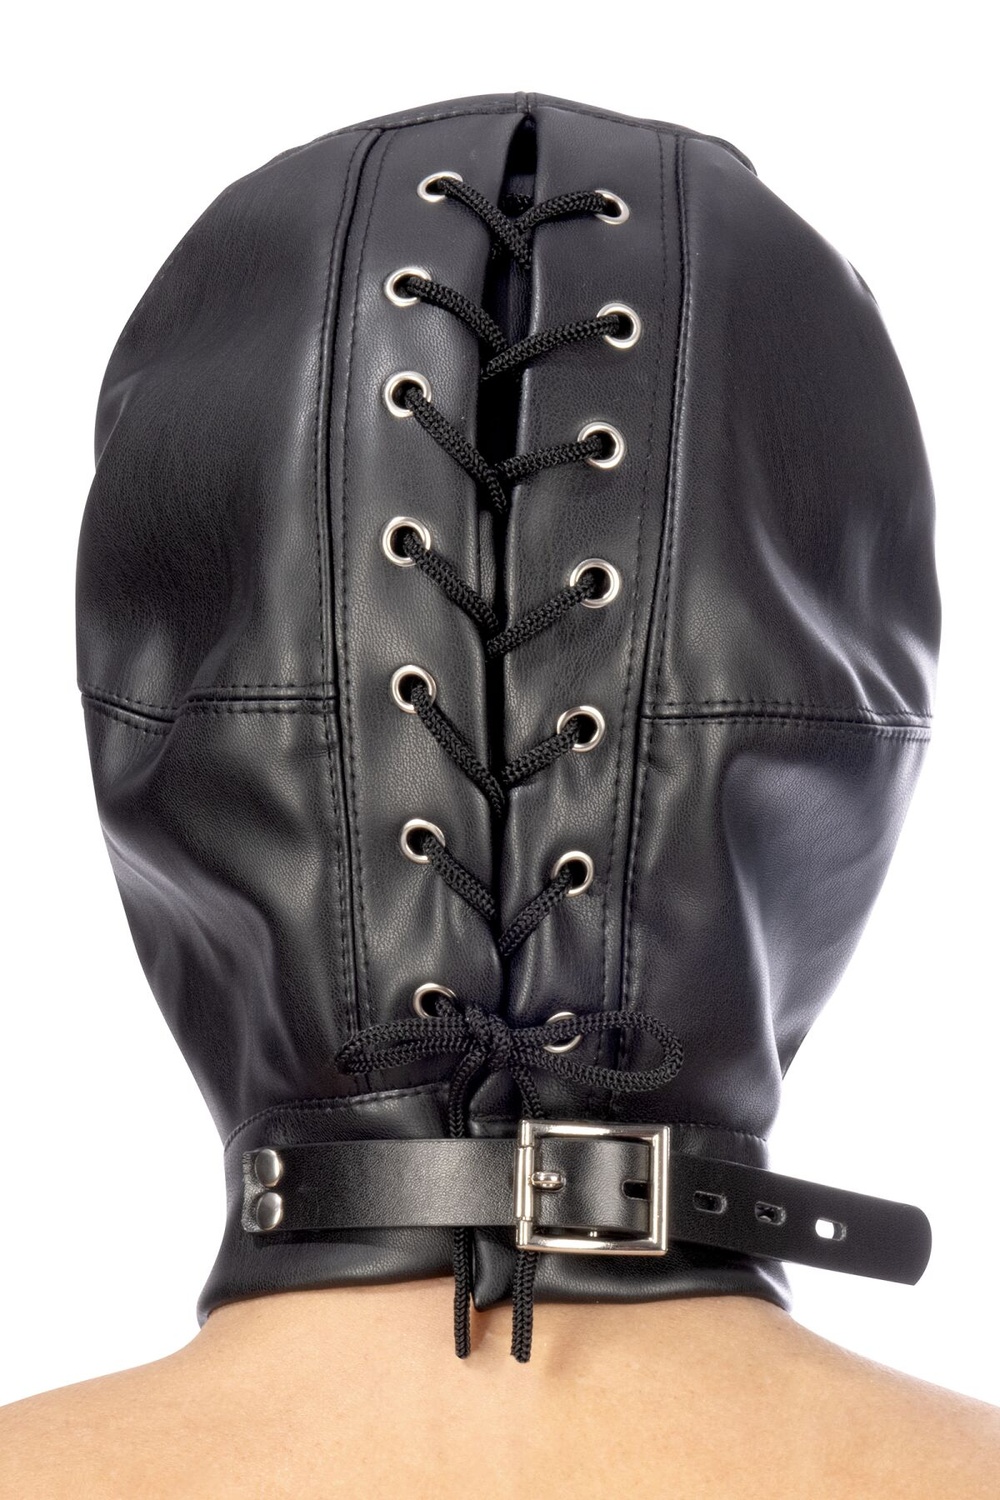 Капюшон для БДСМ зі знімною маскою Fetish Tentation BDSM hood in leatherette with removable mask фото